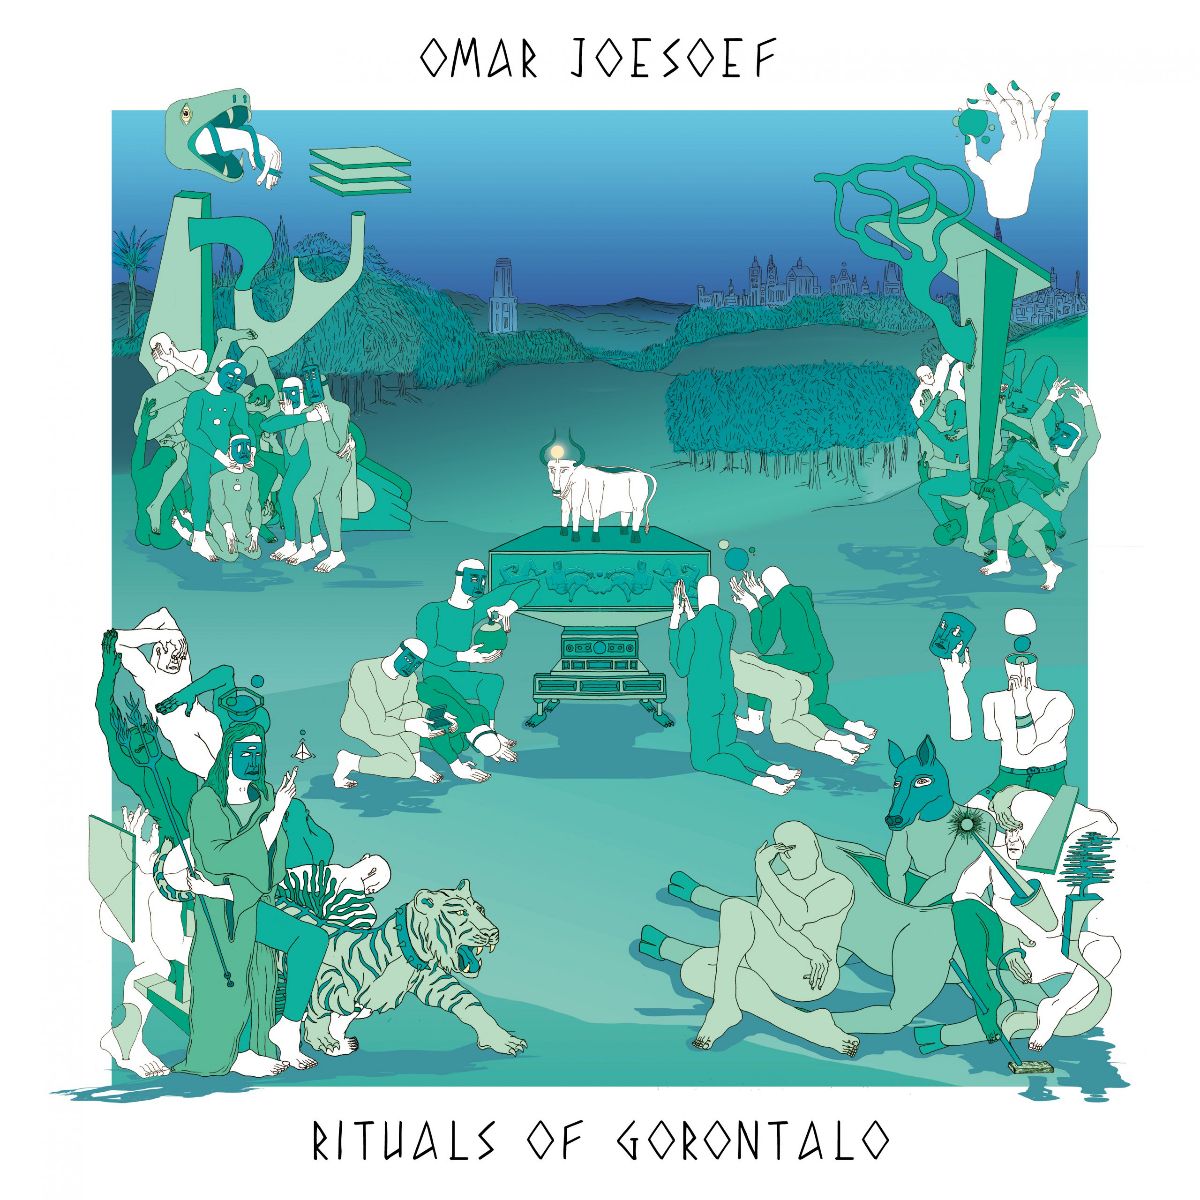 OMAR JOESOEF / RITUALS OF GORONTALO EP